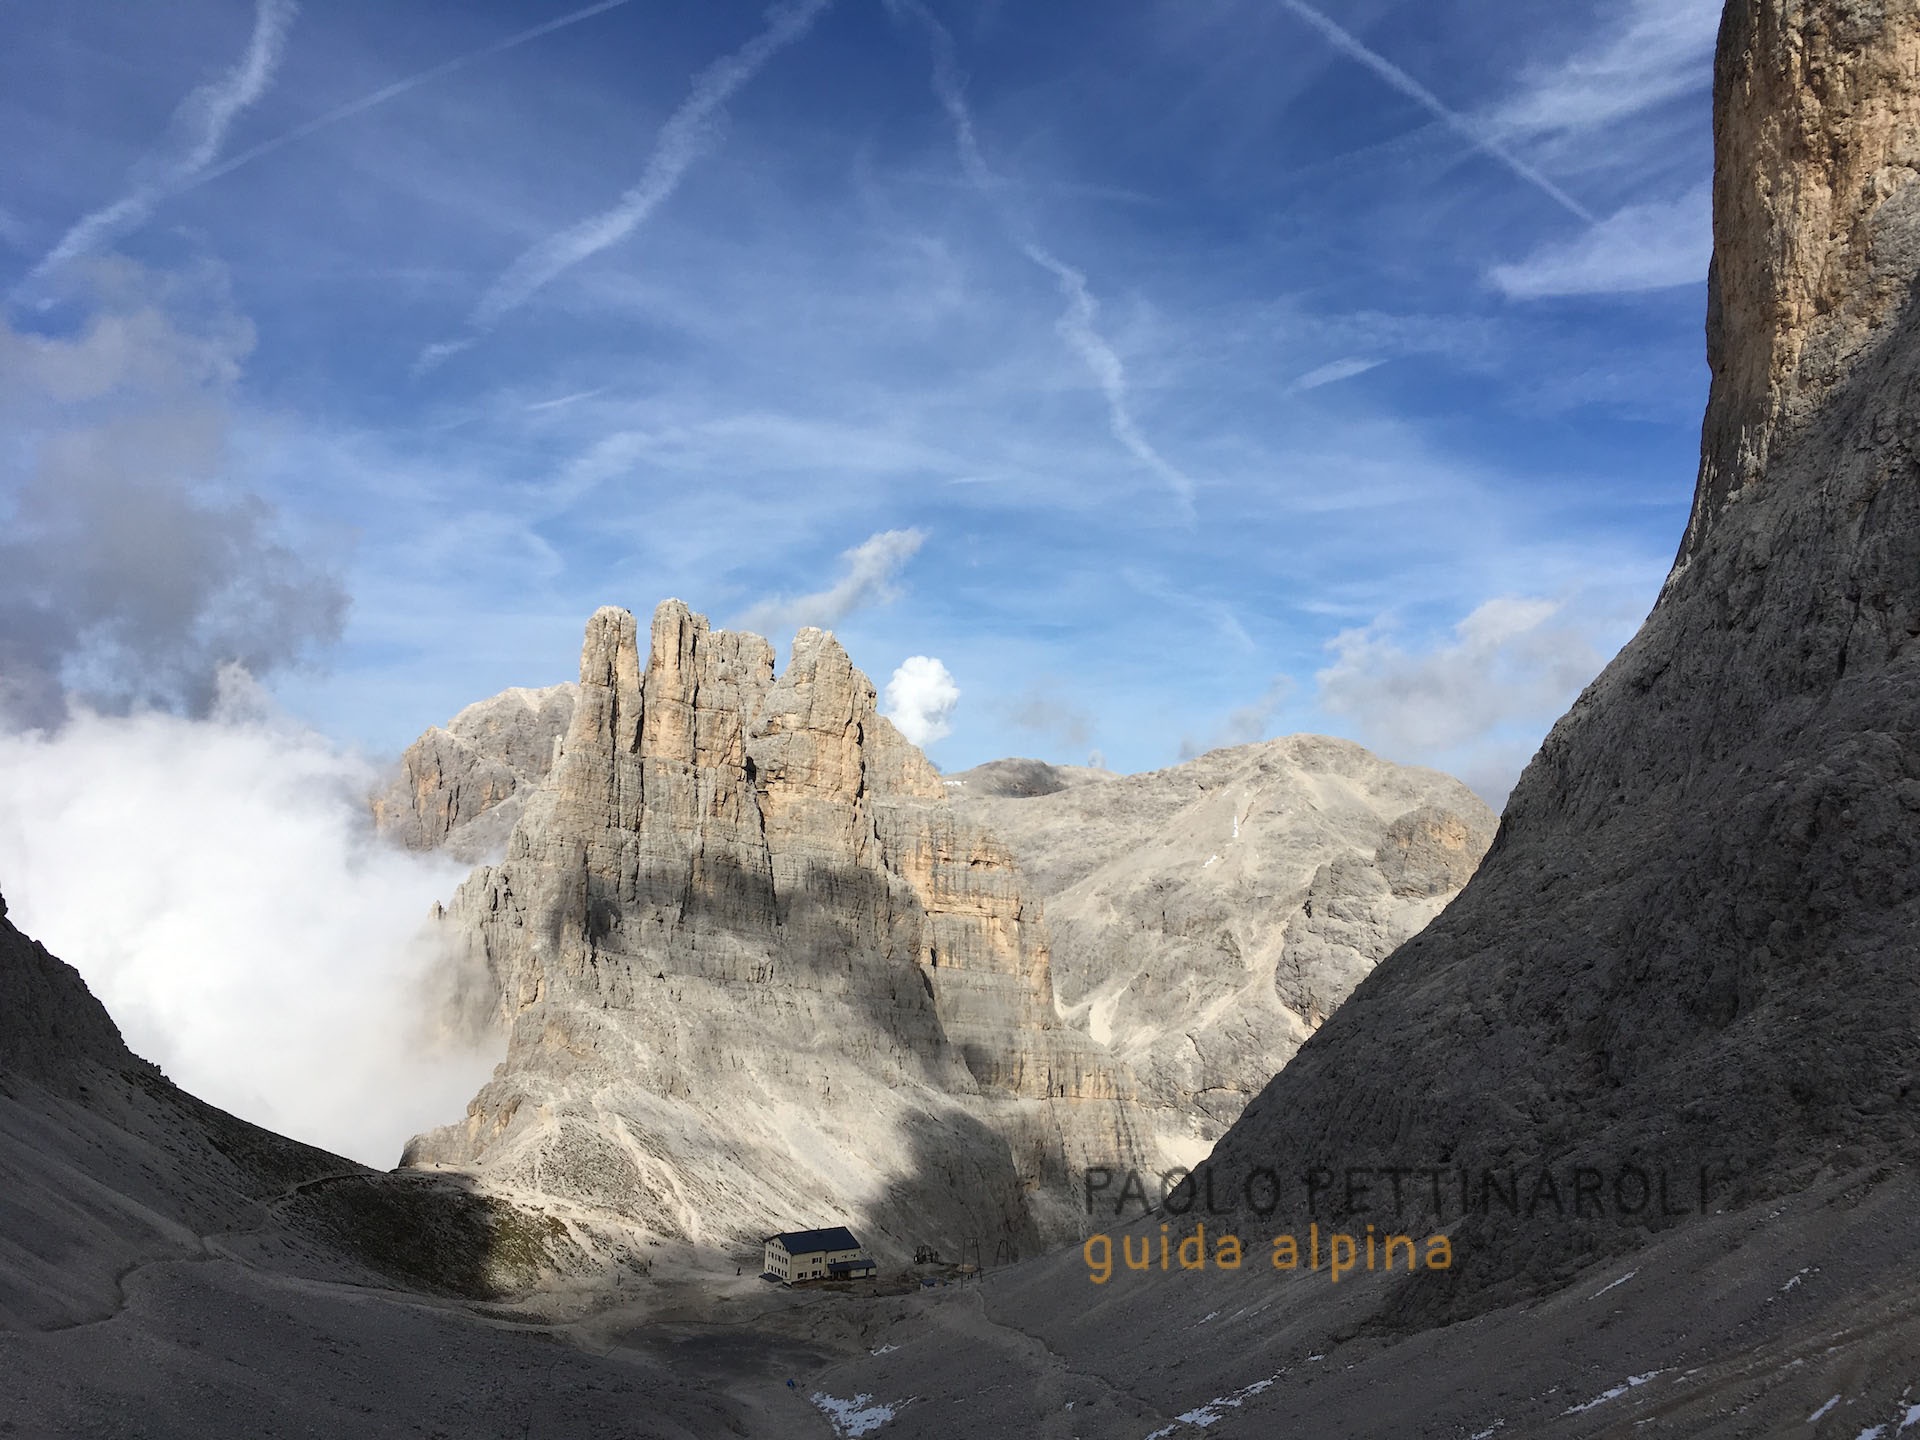 IMG_2611-collaborazioni_paolo pettinaroli guida alpina